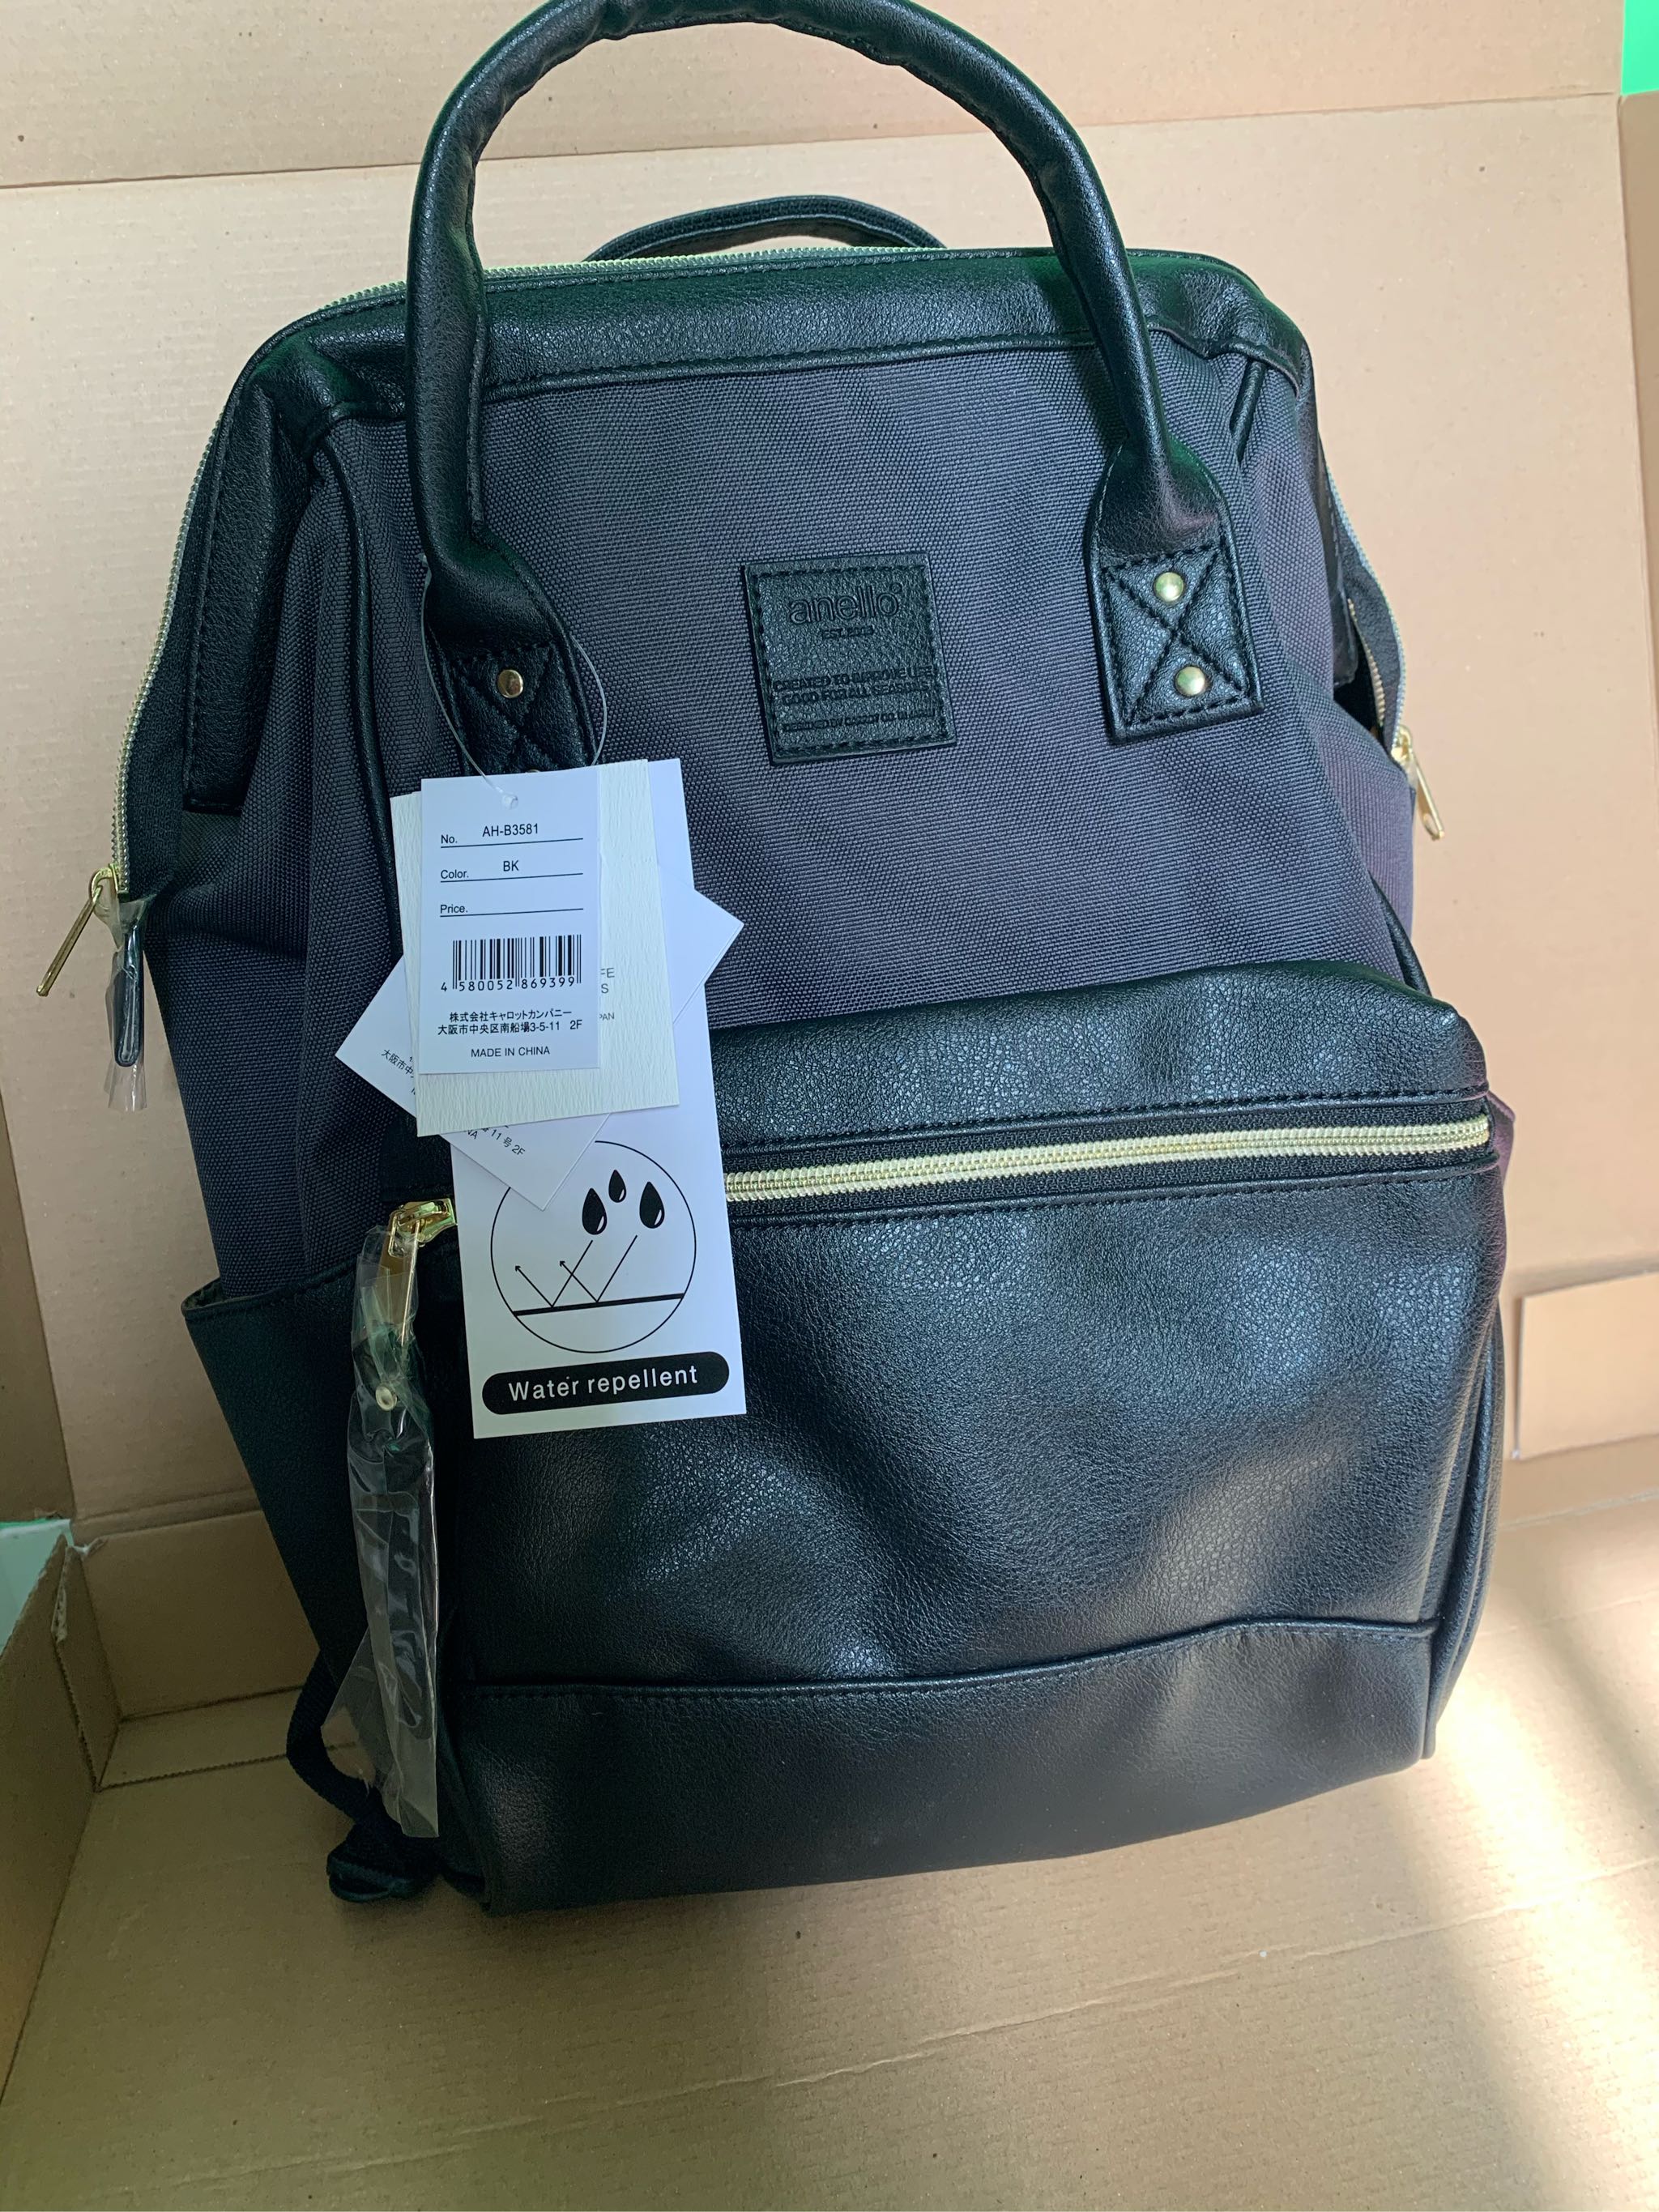 anello / TONE Backpack Mini AH-B3581